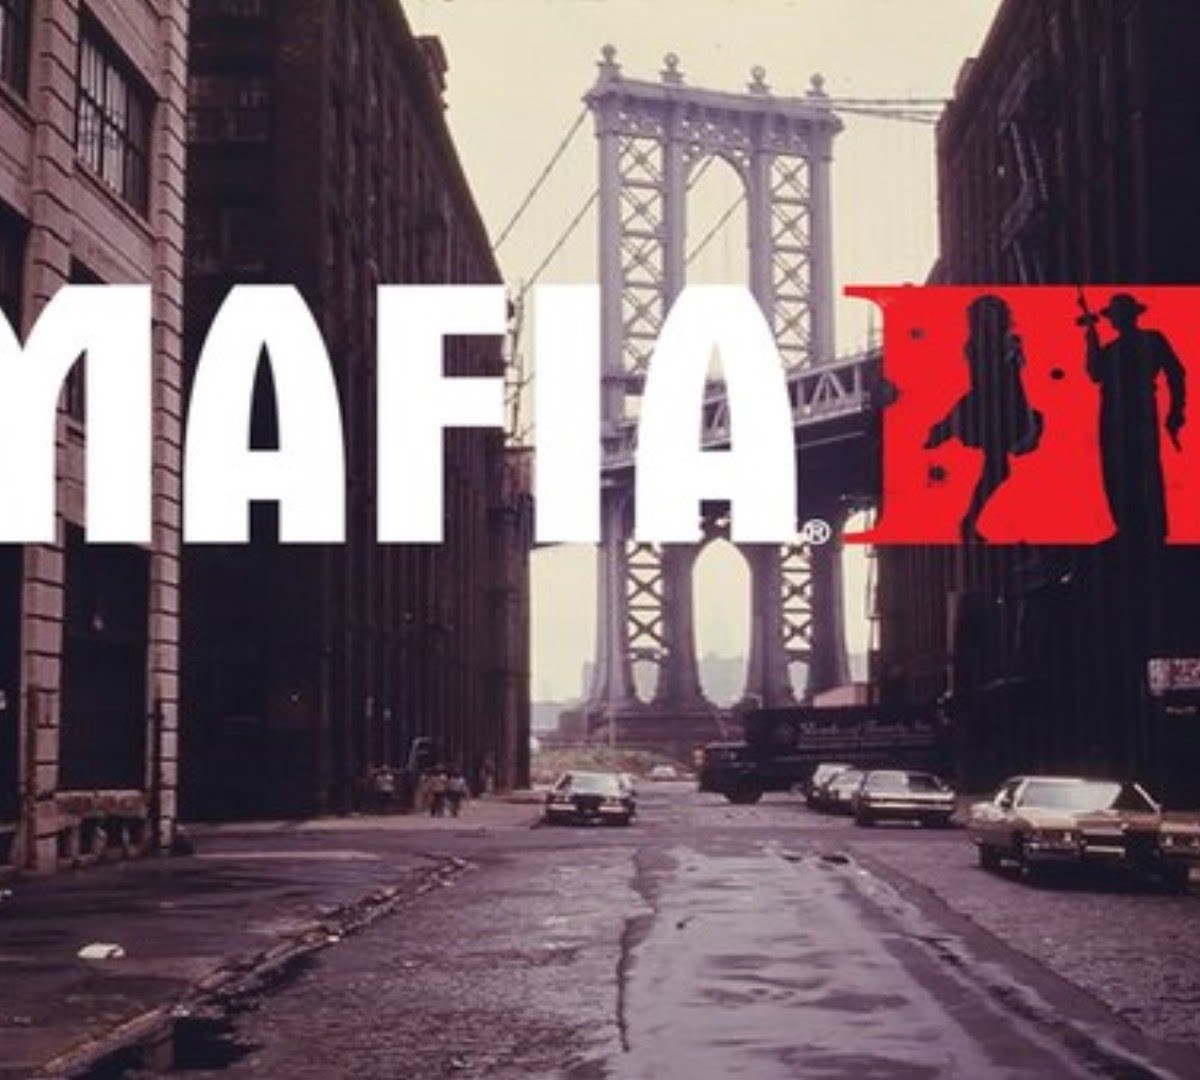 Requisitos mínimos para rodar Mafia 3 no PC